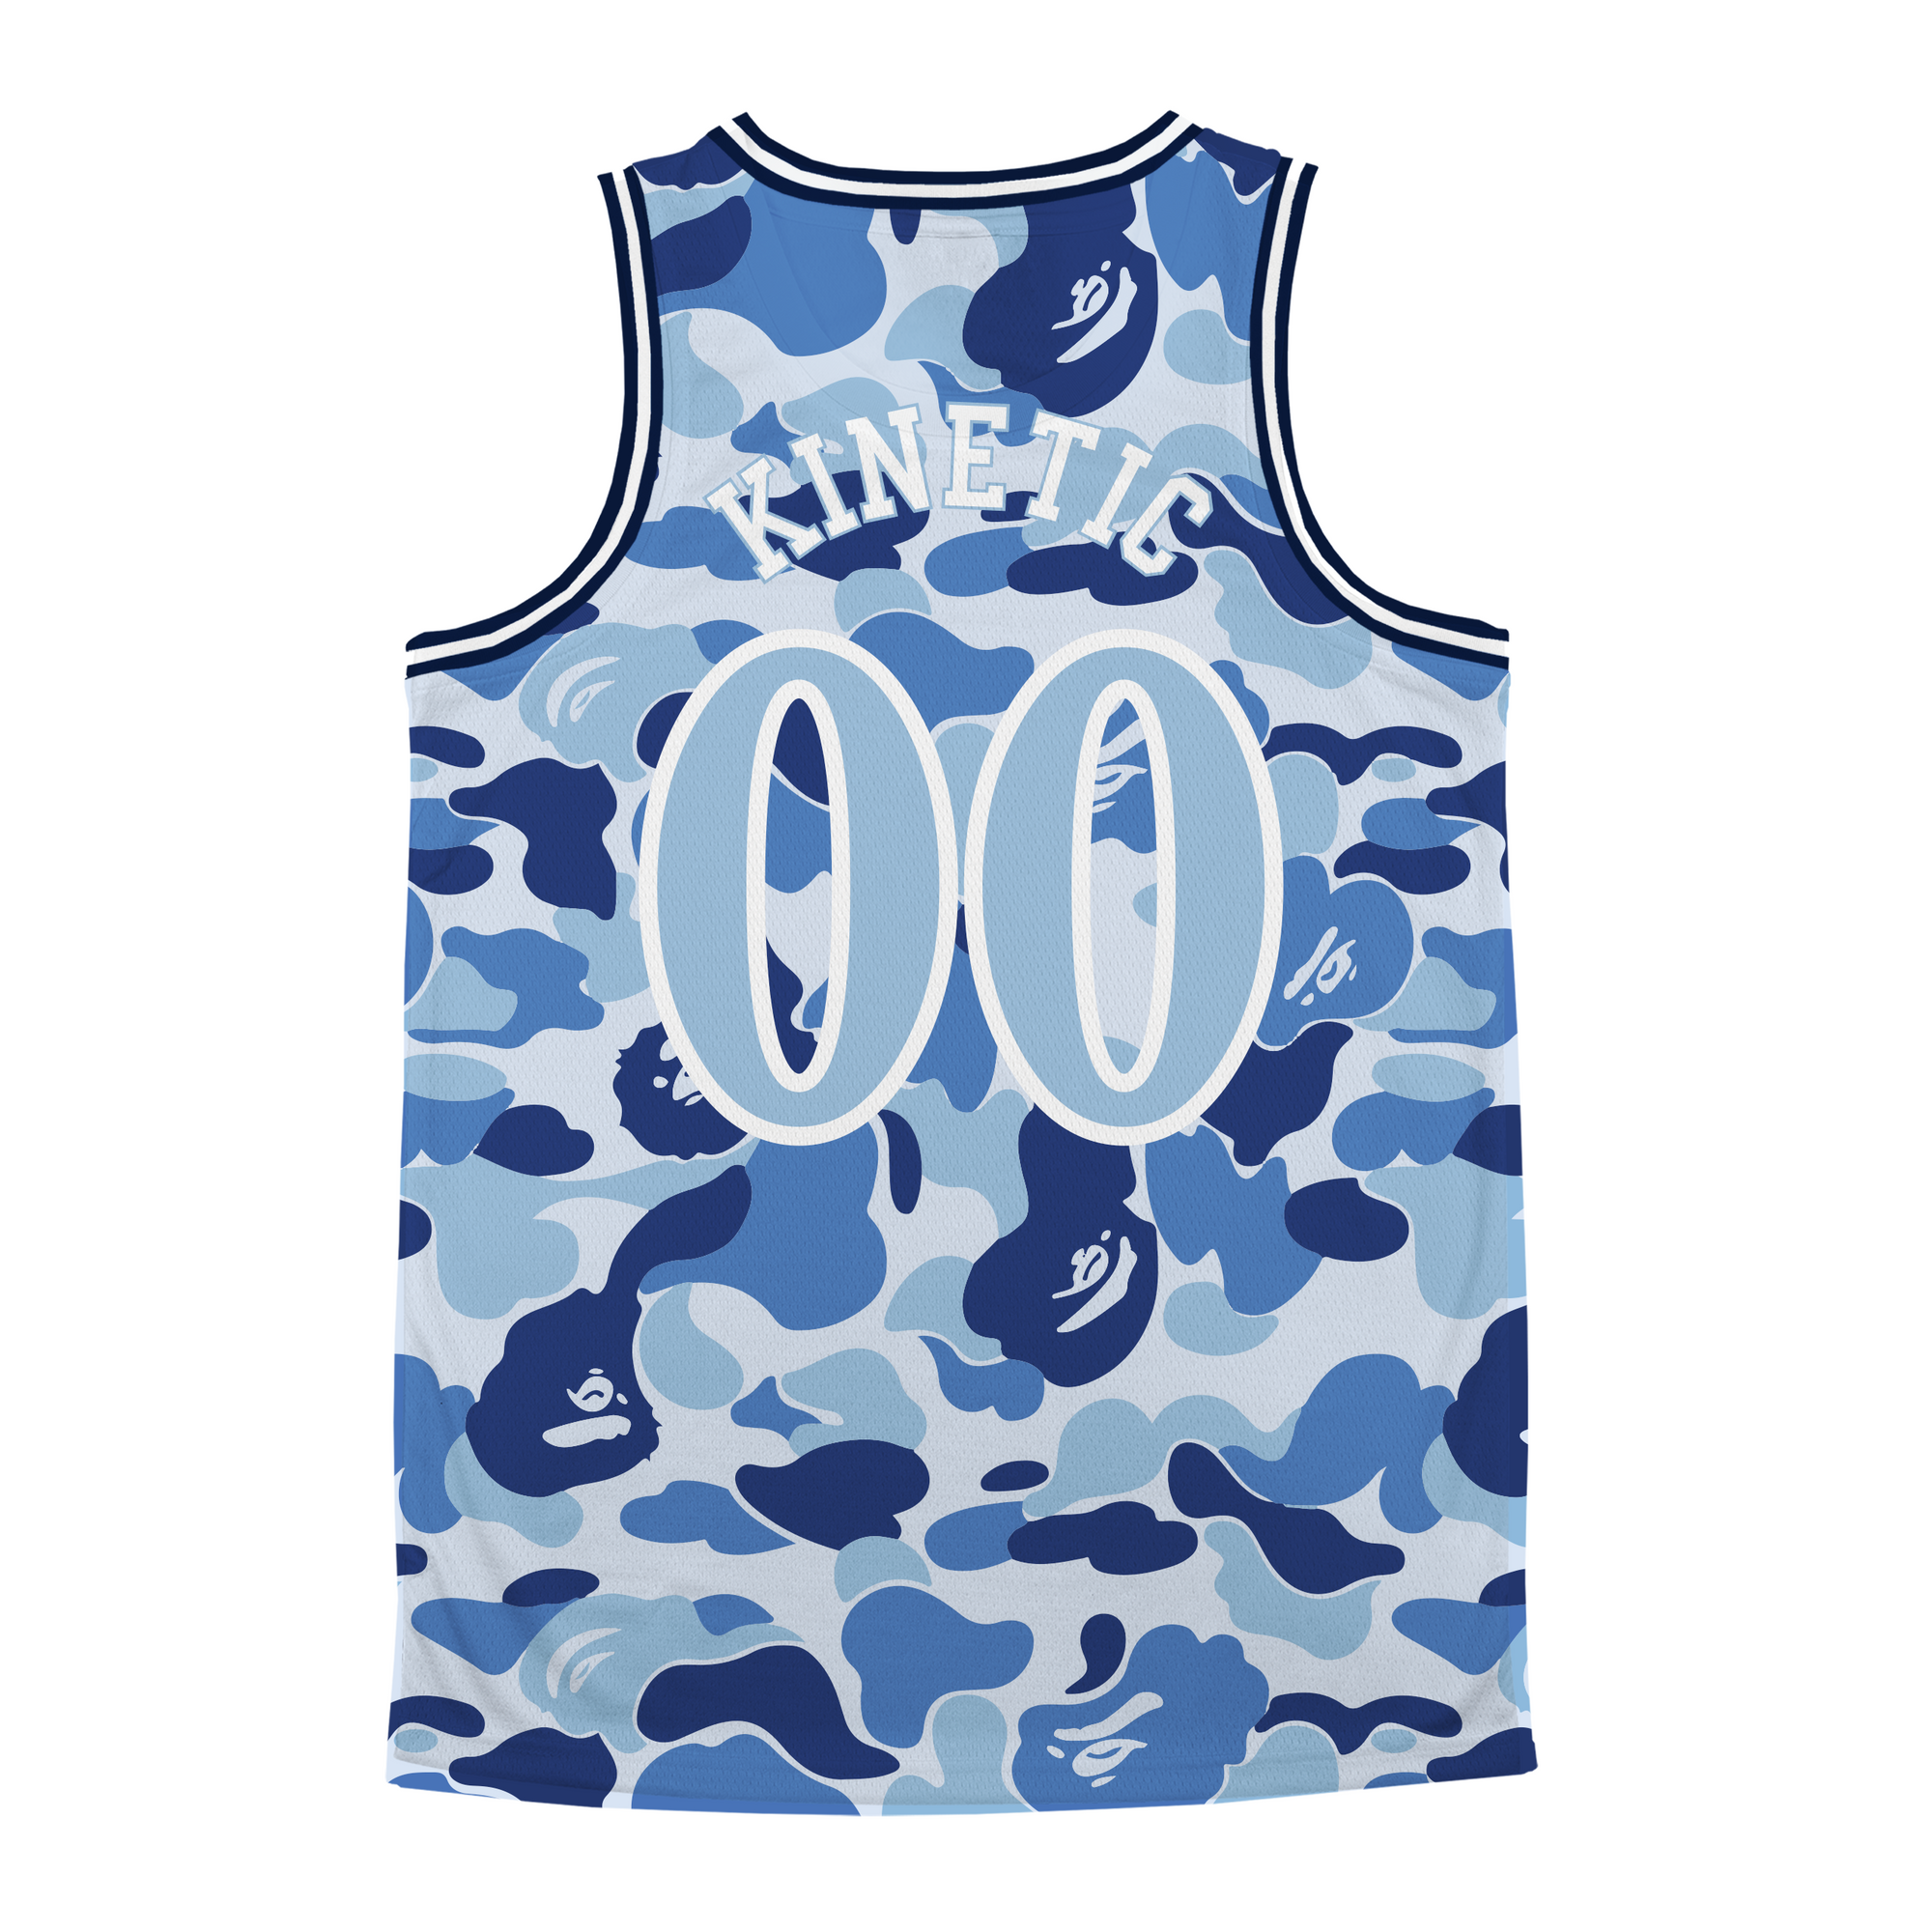 Phi Delta Theta - Blue Camo Basketball Jersey